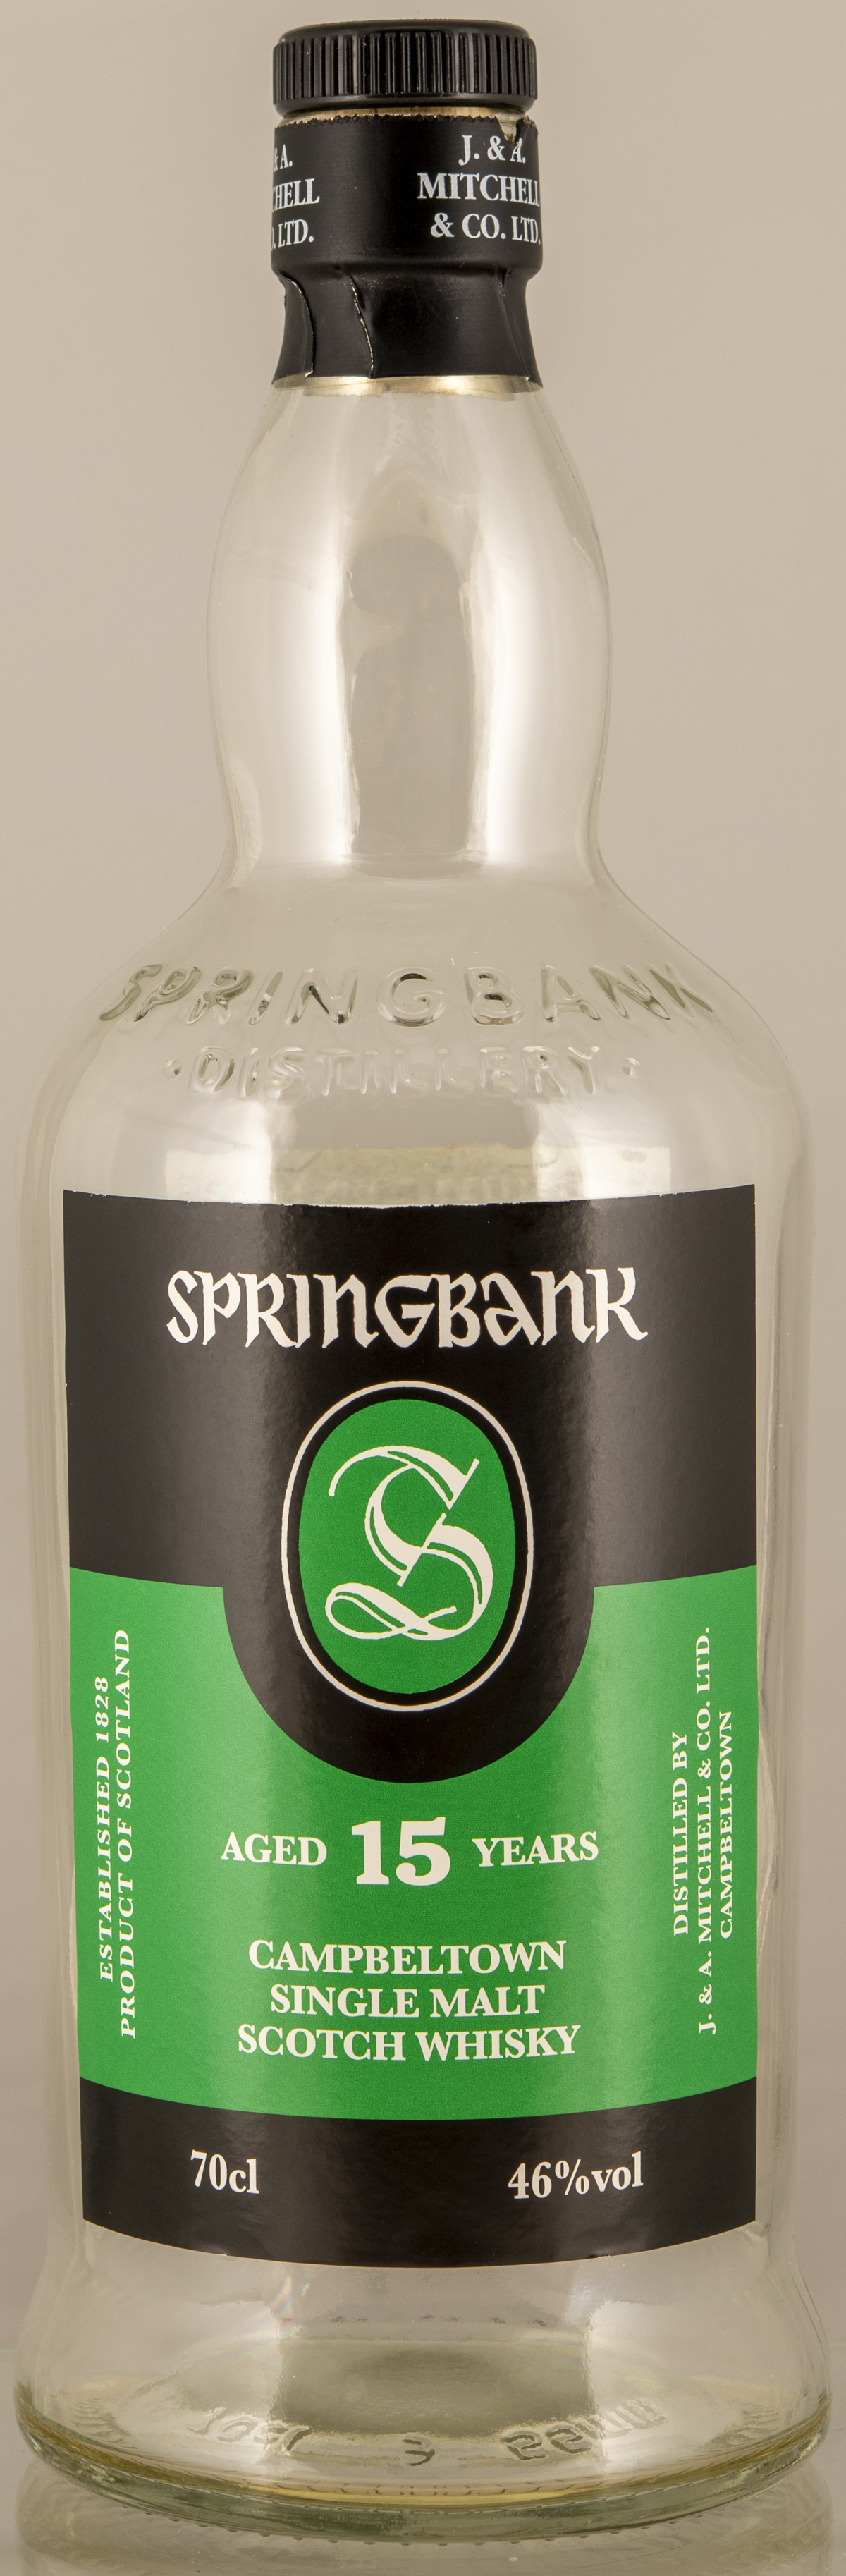 Billede: D85_8397 - Springbank 15 - bottle front.jpg